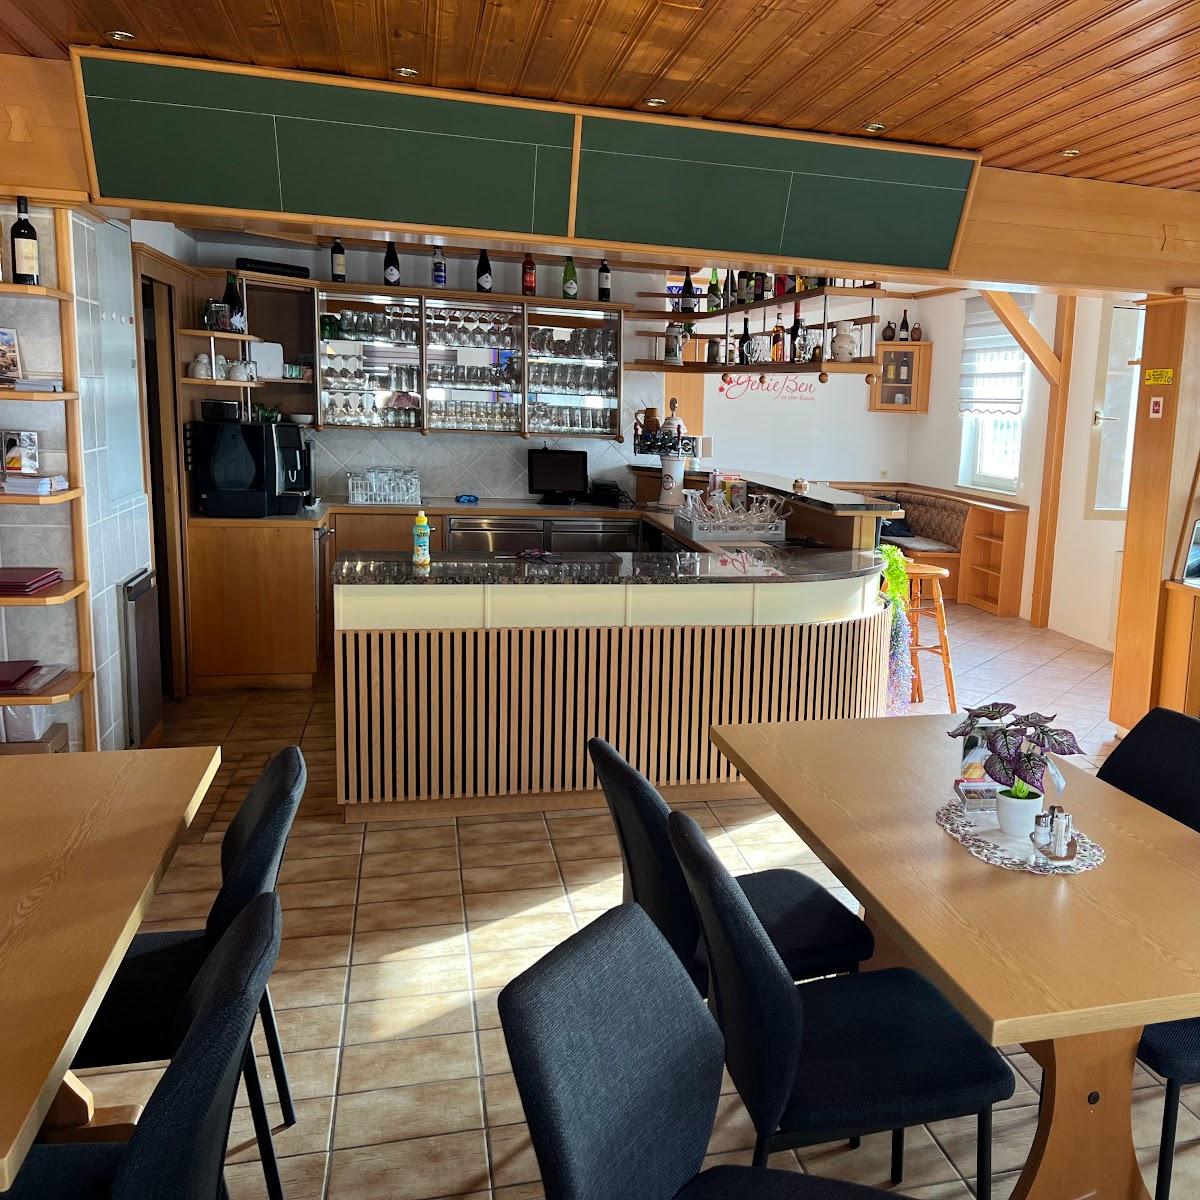 Restaurant "Restaurant Pizzeria Samos" in Amstetten